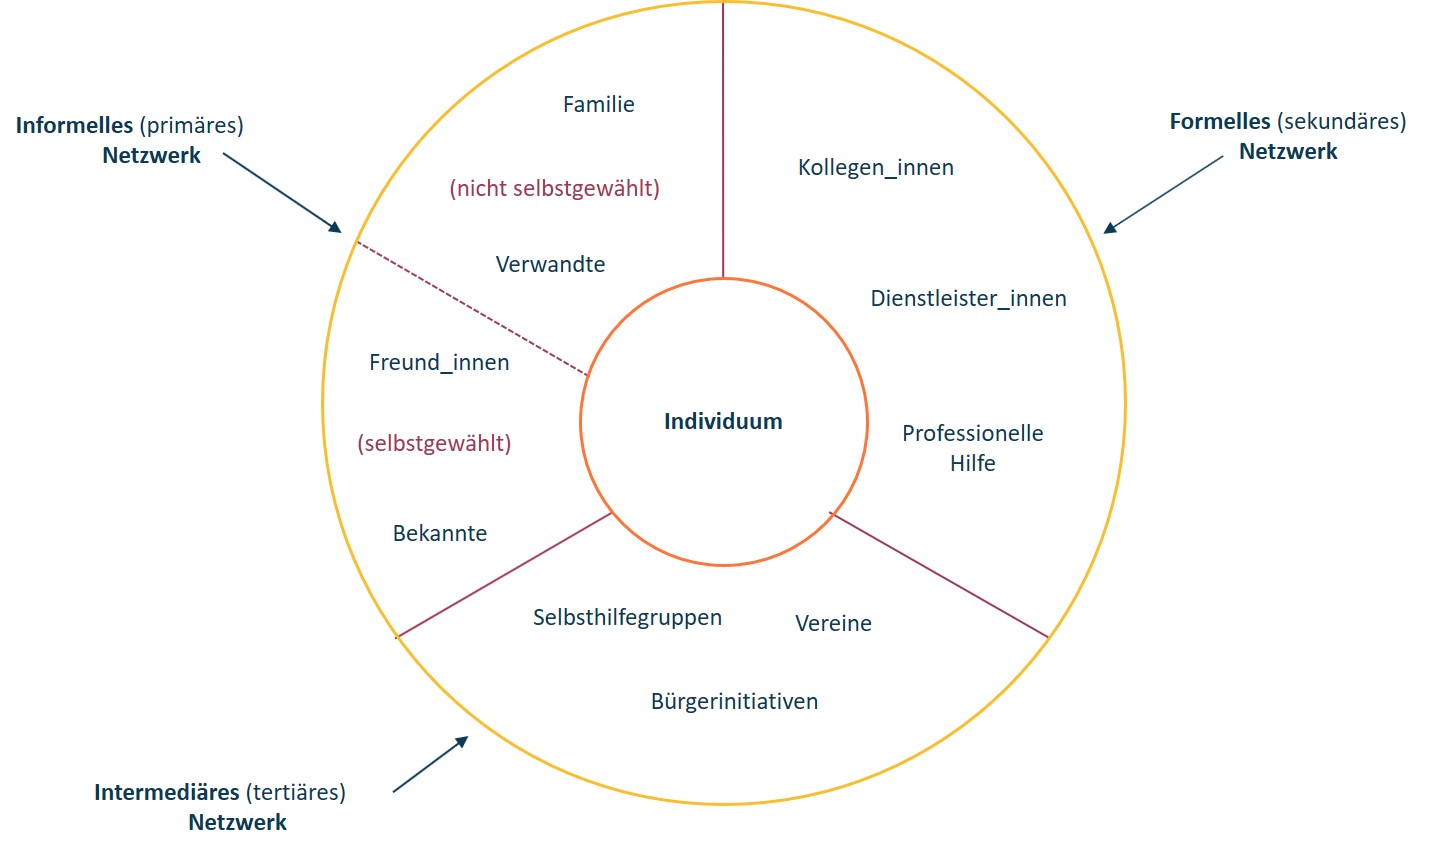 Diagramm, das die sozialen Netzwerke einer Person darstellt: informelle (primäre), formelle (sekundäre) und Vermittler (tertiäre), einschließlich Familie, Freunde, Kollegen und Gemeinschaftsgruppen in deutschen Bezeichnungen.